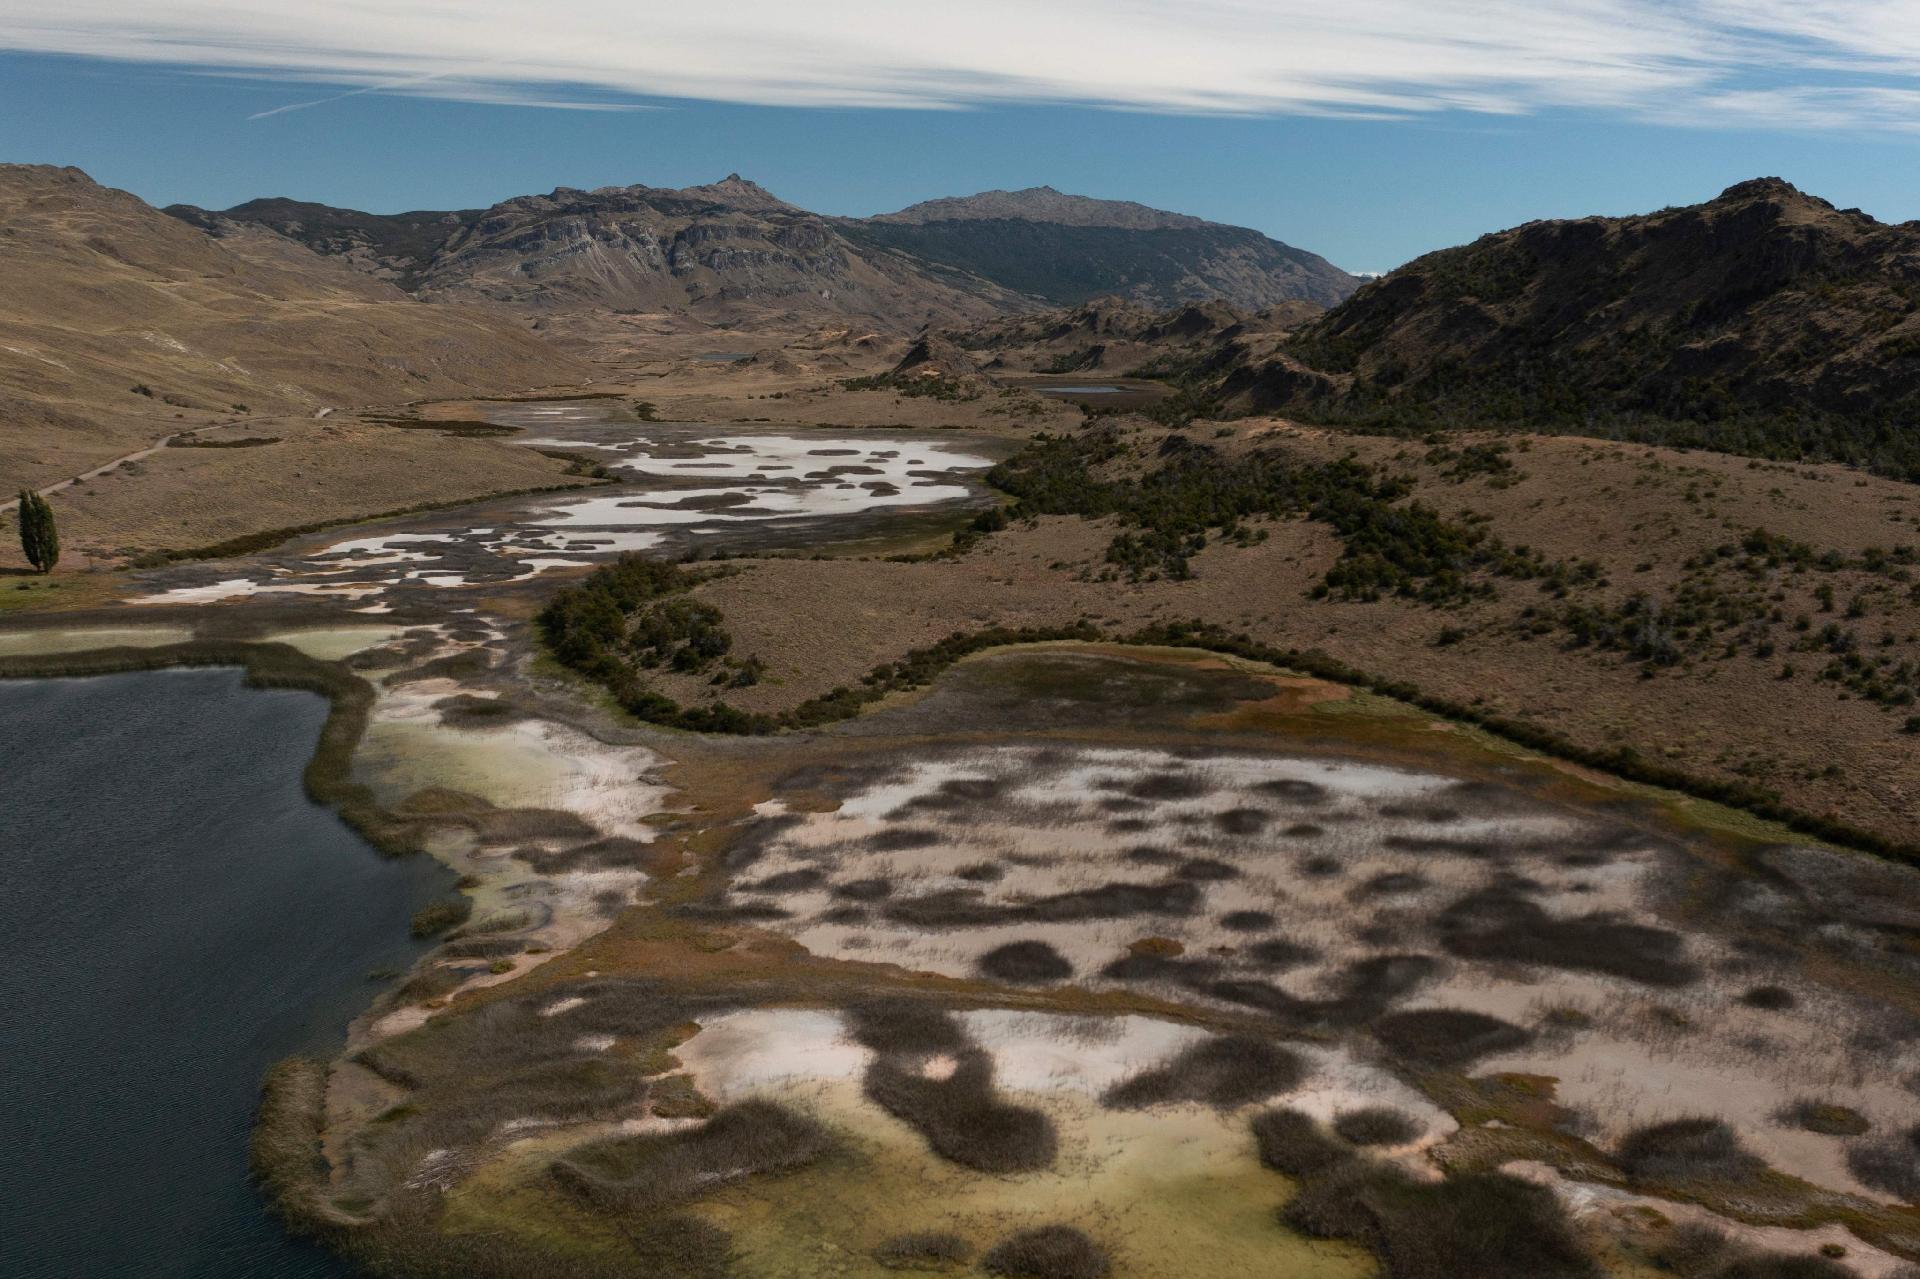 Vista aérea de lagos y humedales en el Parque Nacional Patagonia, Región de Aysén, Chile, el 12 de febrero de 2022. - Entre montañas escarpadas y valles profundos dominados por el viento, la Patagonia chilena aún conserva su esencia salvaje como naturaleza "Tesoro" gracias a las acciones de conservación de este ecosistema en continua regeneración.  (Foto de PABLO COZZAGLIO / AFP) ORG ENVIAR: SCL5956 - PABLO COZZAGLIO/AFP